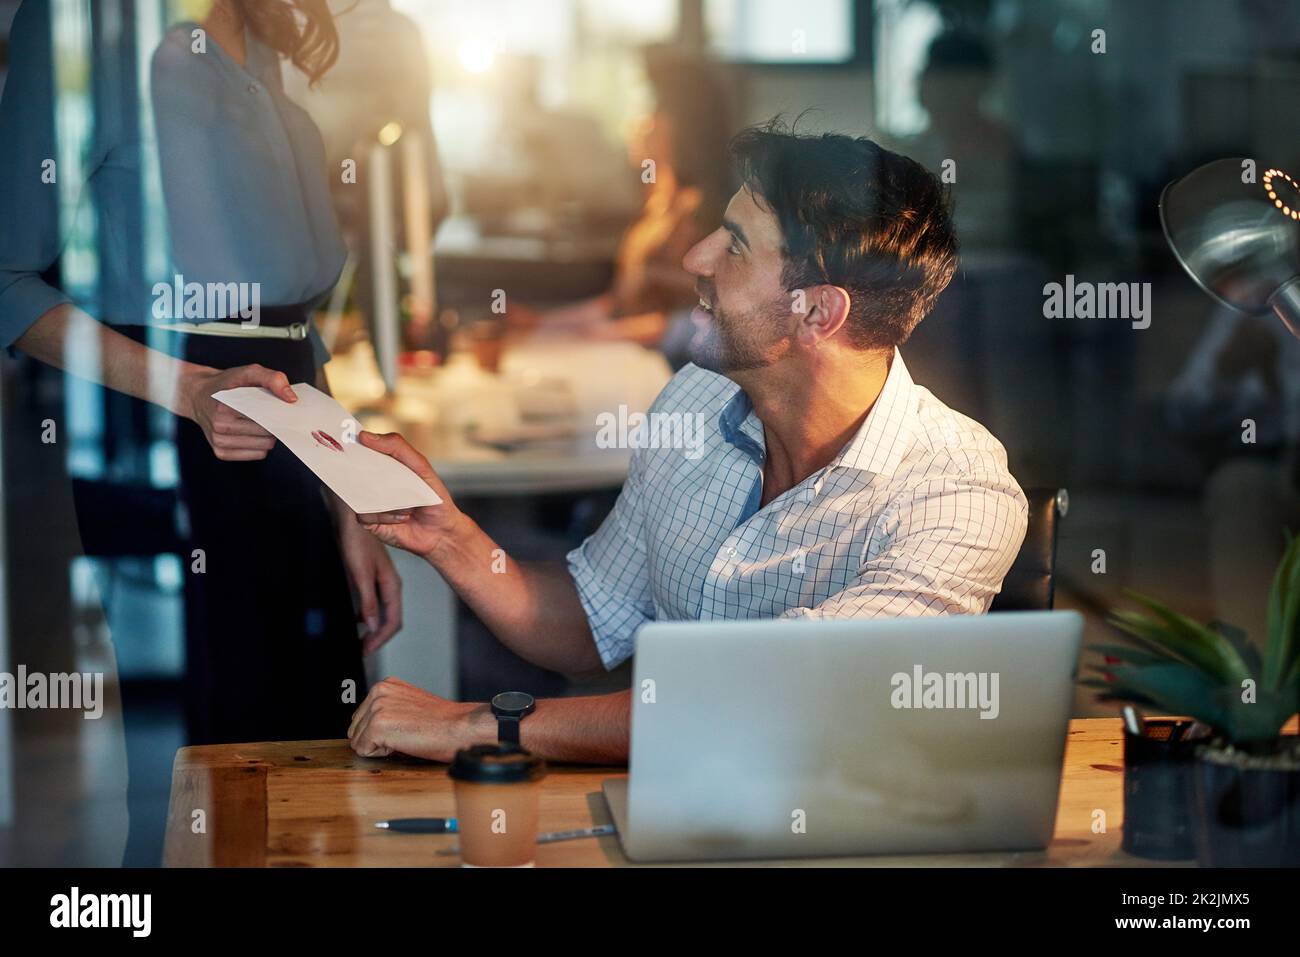 Livraison spéciale. Photo d'un homme d'affaires charmant recevant une note d'amour d'une collègue de travail. Banque D'Images